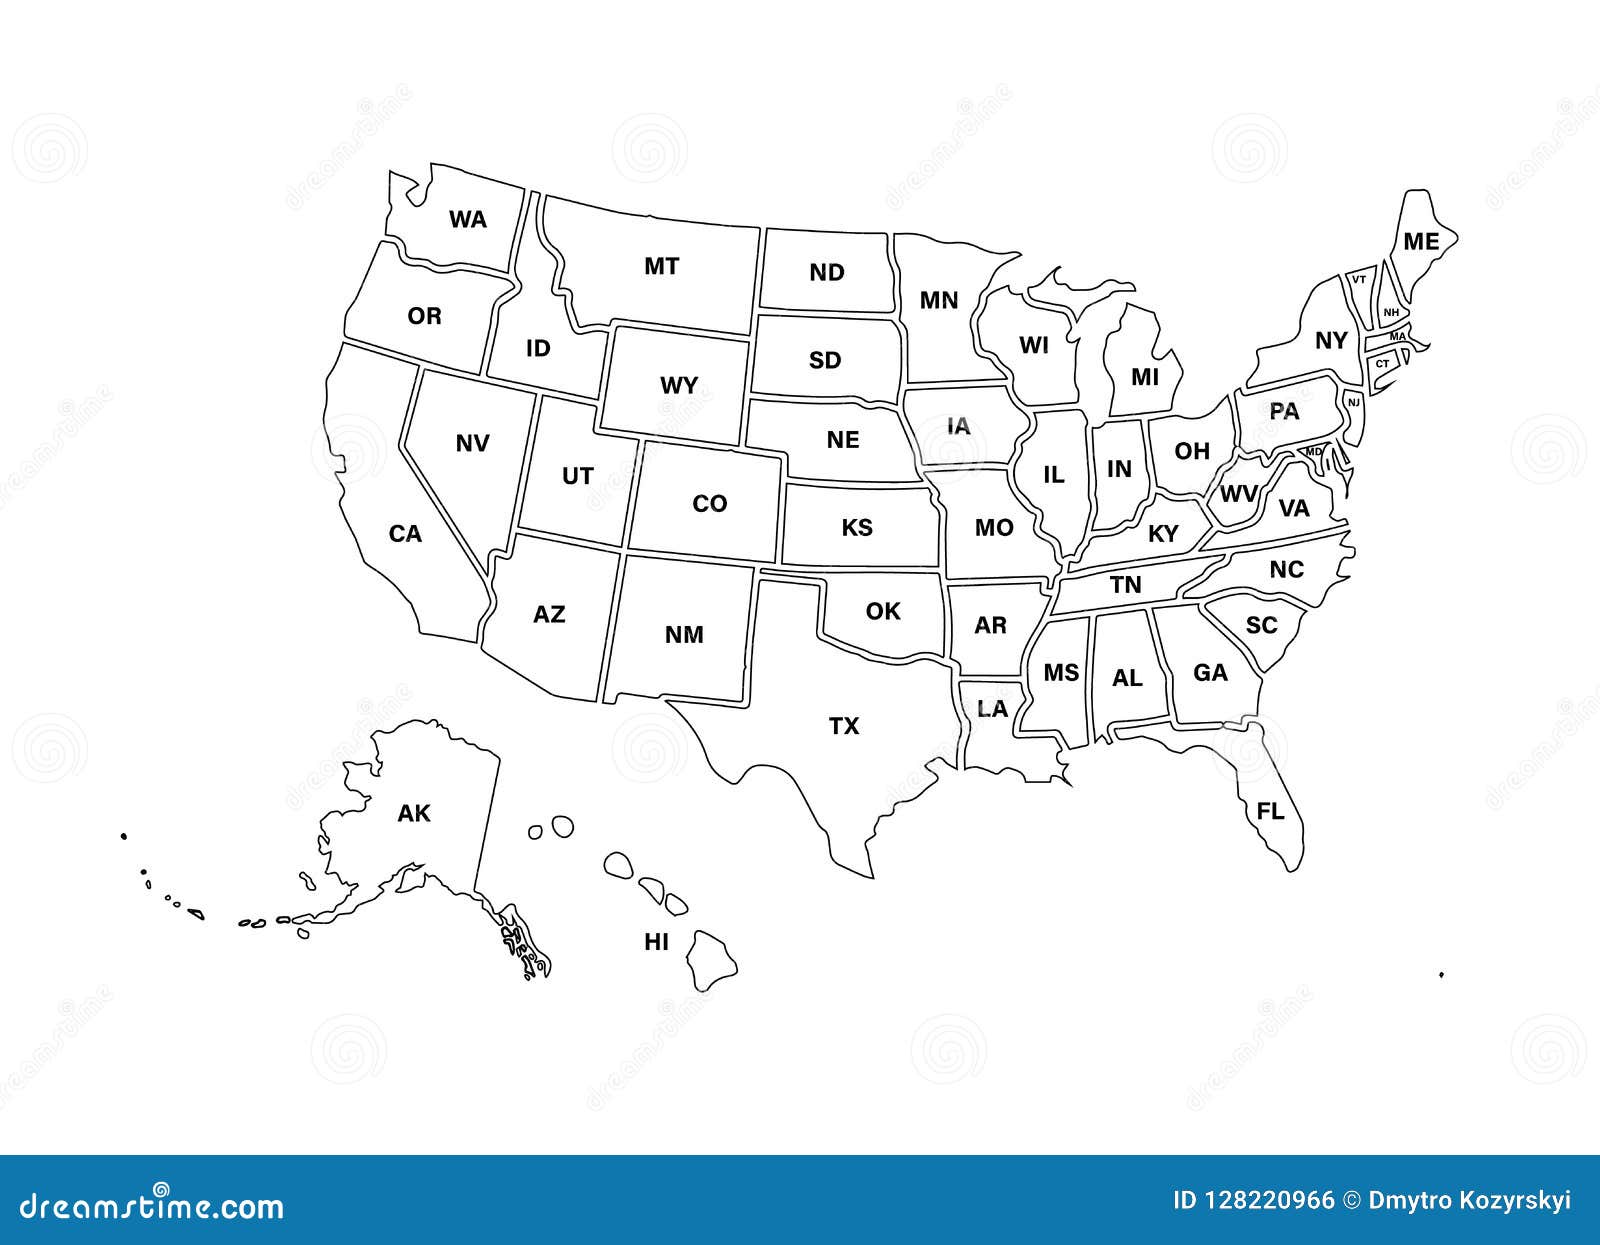 Bản đồ Mỹ trống trên nền trắng sẽ đưa bạn vào một thế giới mới, nơi mà tất cả các chi tiết và đường nét được hiện thị một cách rõ ràng. Đây là cơ hội để bạn tìm hiểu về đất nước Mỹ một cách trung thực và đầy đủ.